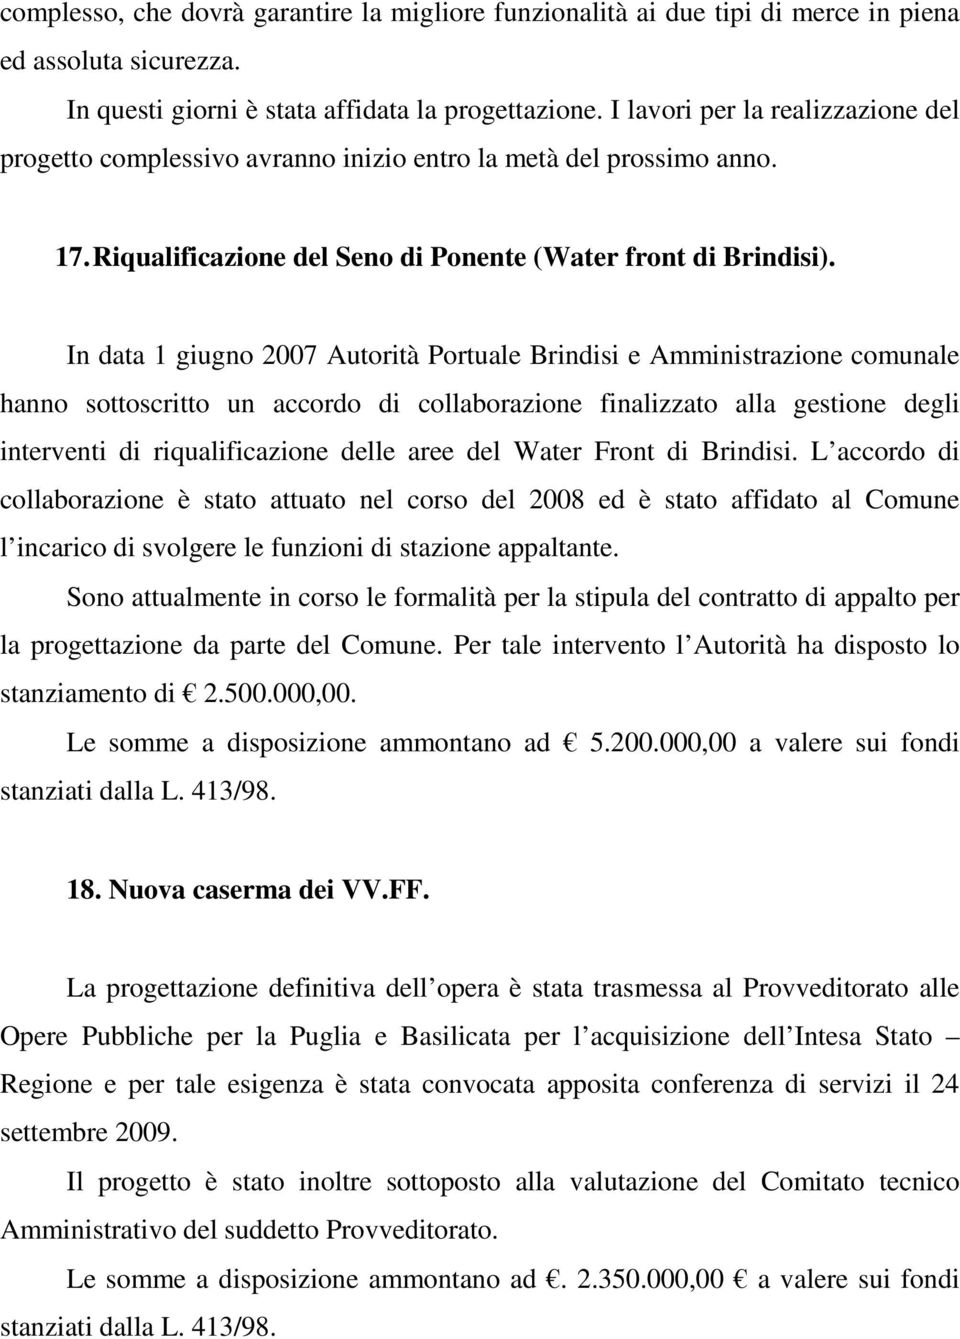 In data 1 giugno 2007 Autorità Portuale Brindisi e Amministrazione comunale hanno sottoscritto un accordo di collaborazione finalizzato alla gestione degli interventi di riqualificazione delle aree